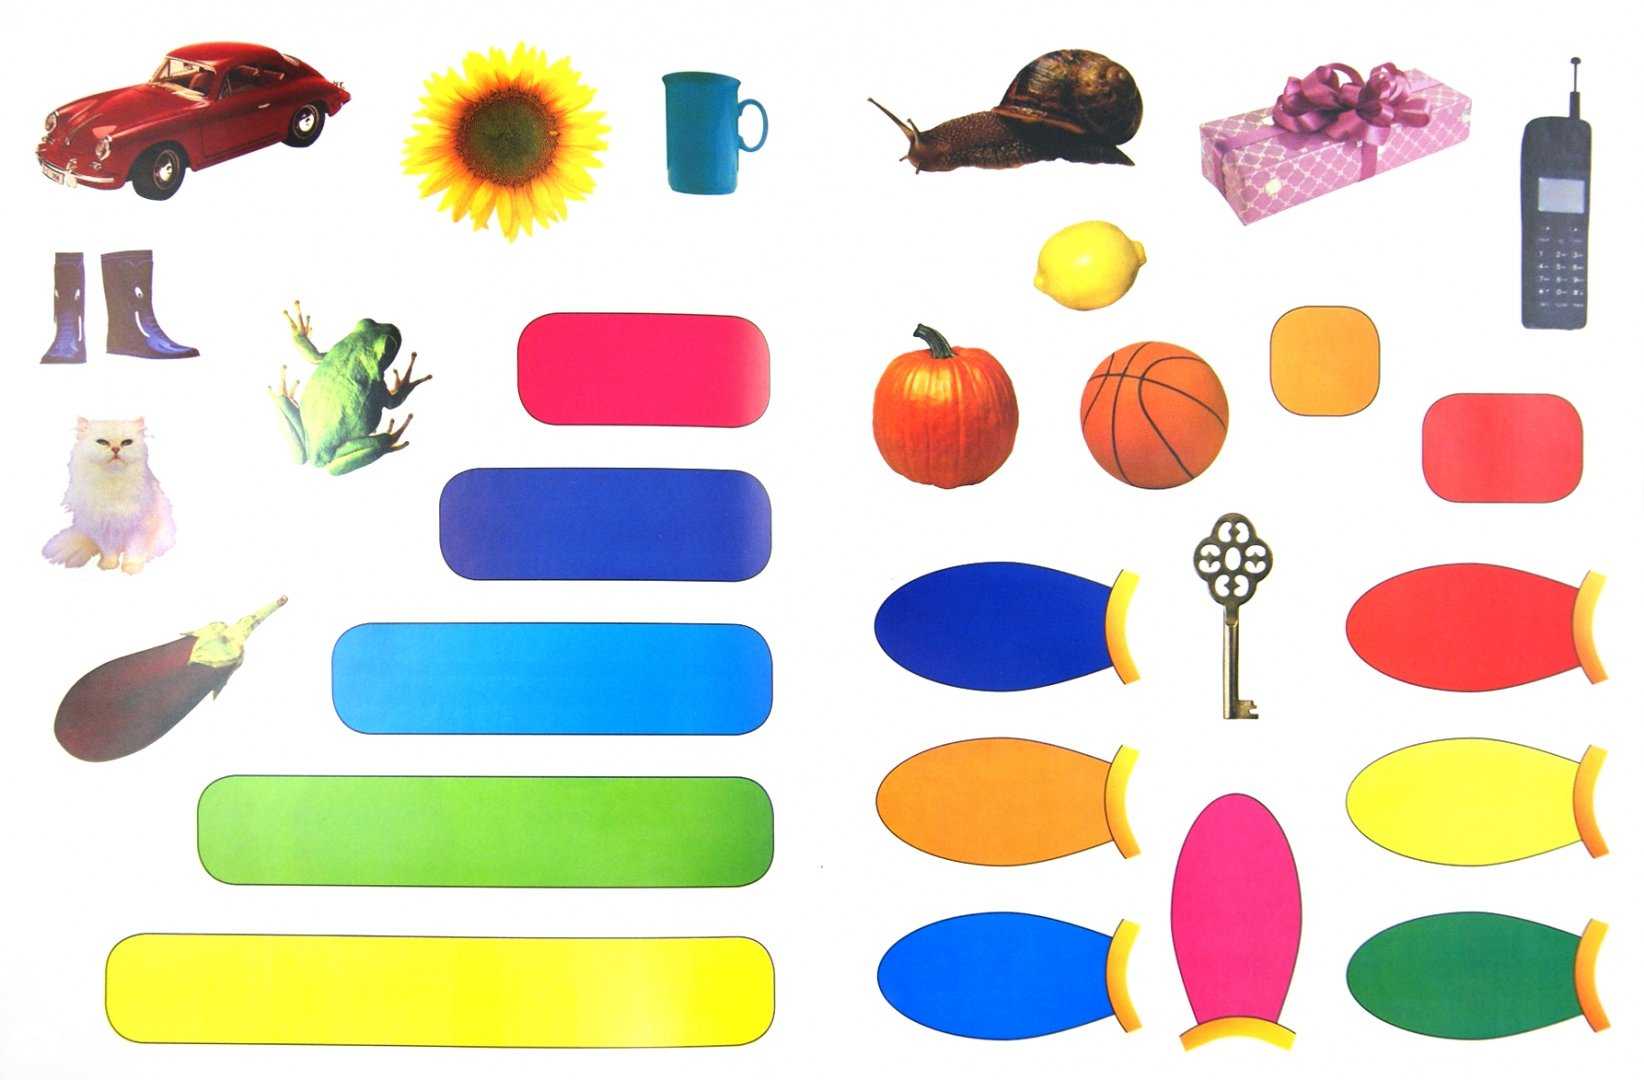 Этот дивный разноцветный мир: как научить ребенка цветам и в каком возрасте стоит начинать занятия?